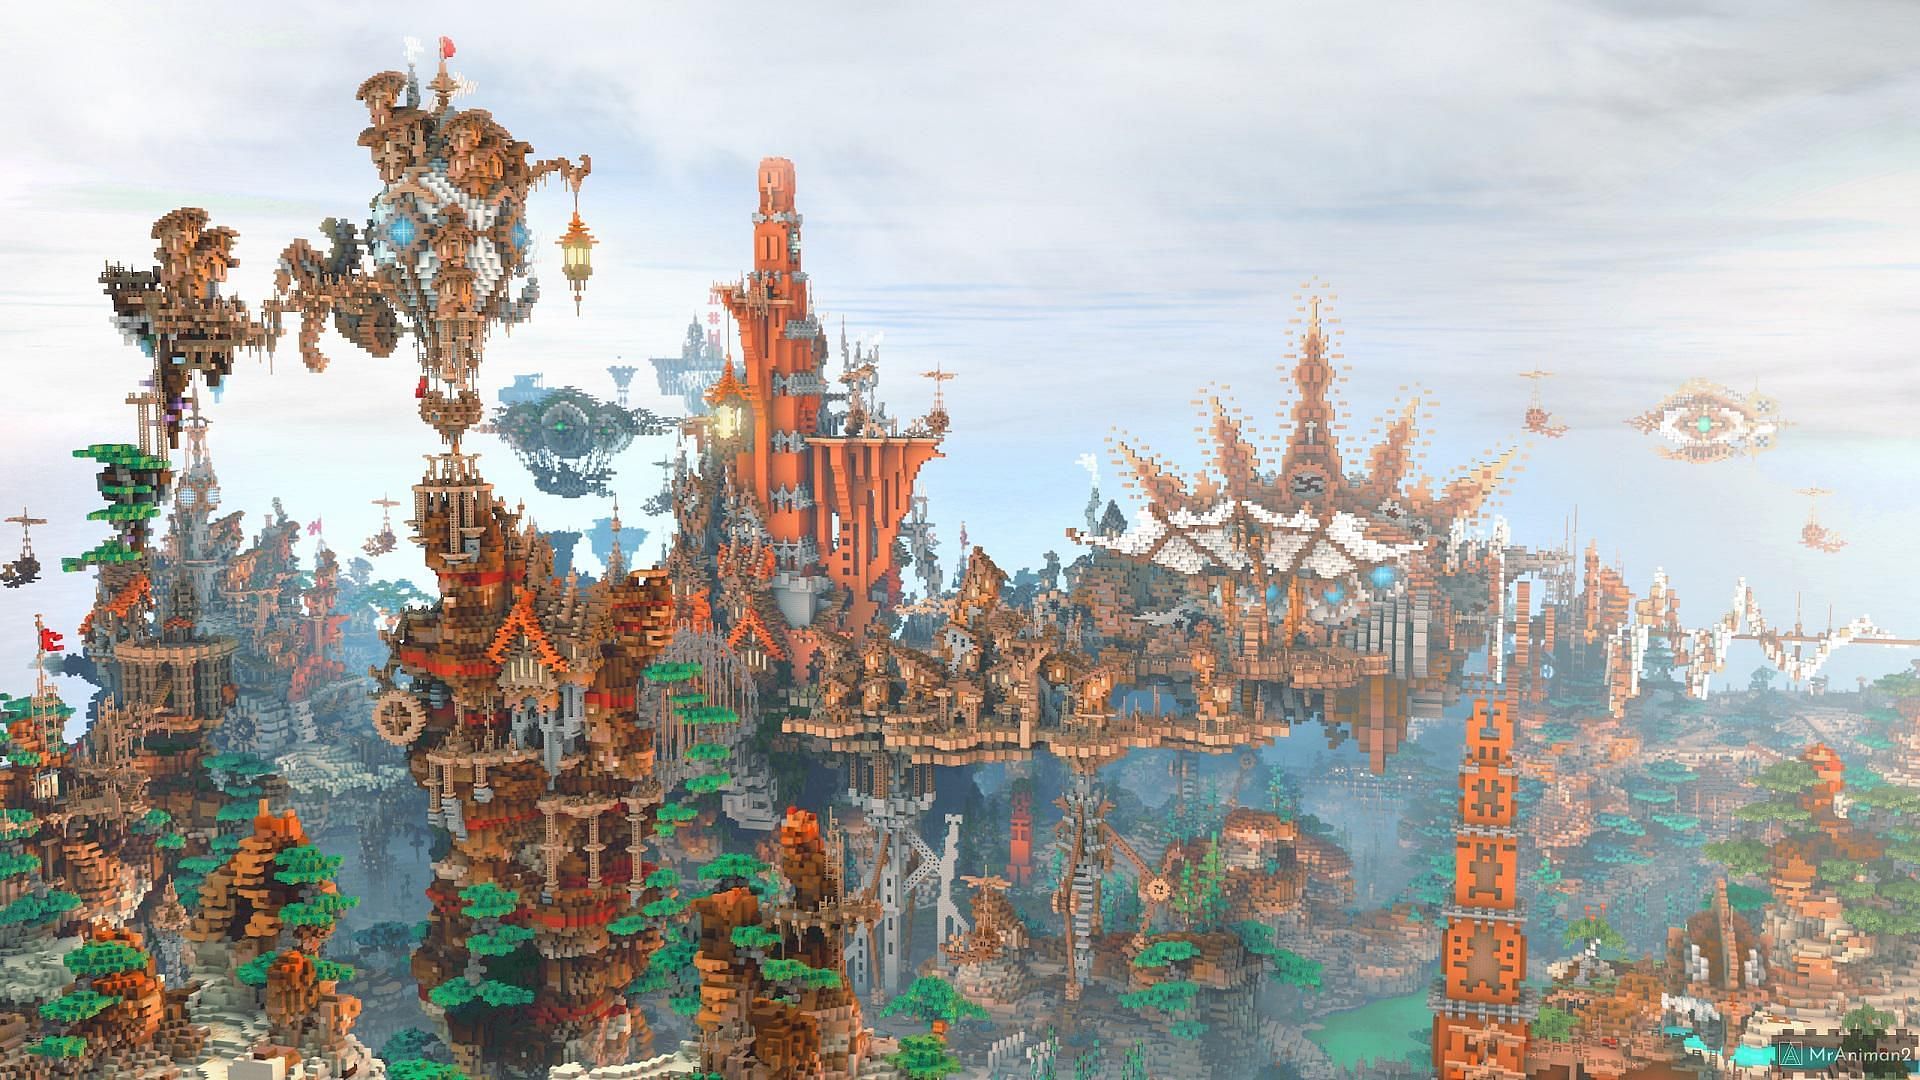 10 very best Minecraft steampunk builds